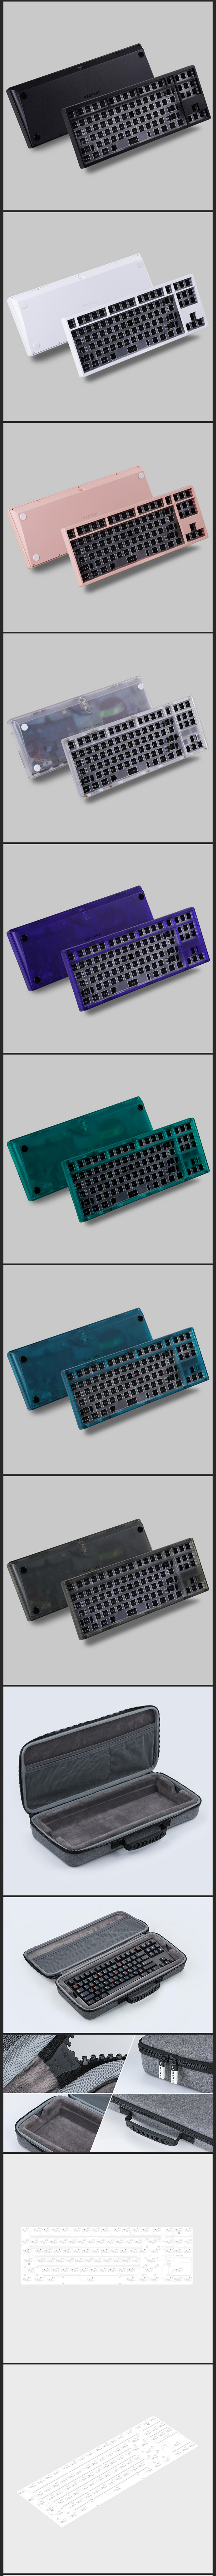 KBDfans Tiger80lite Keyboard Kit